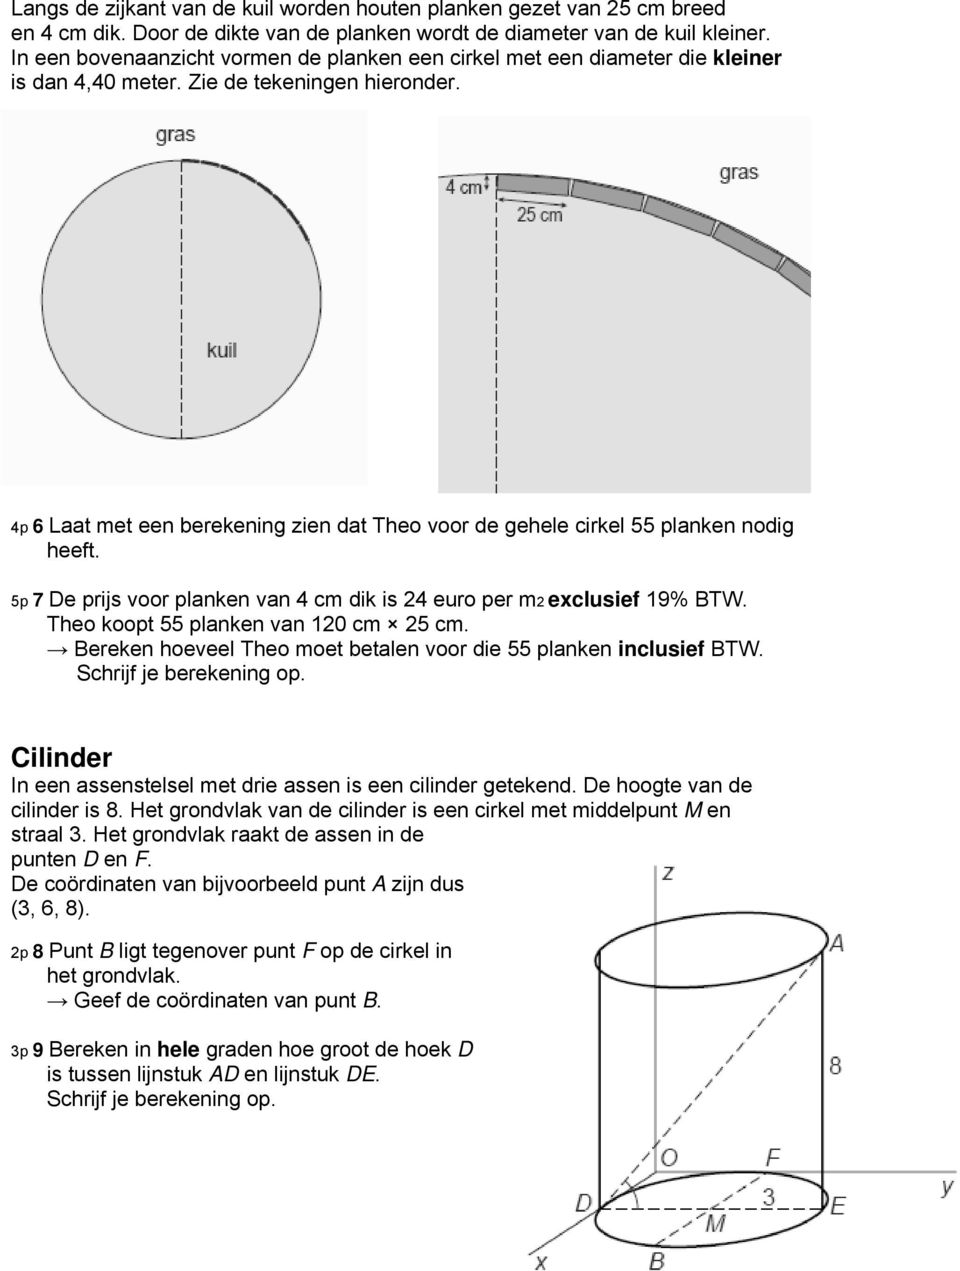 4p 6 Laat met een berekening zien dat Theo voor de gehele cirkel 55 planken nodig heeft. 5p 7 De prijs voor planken van 4 cm dik is 24 euro per m2 exclusief 19% BTW.